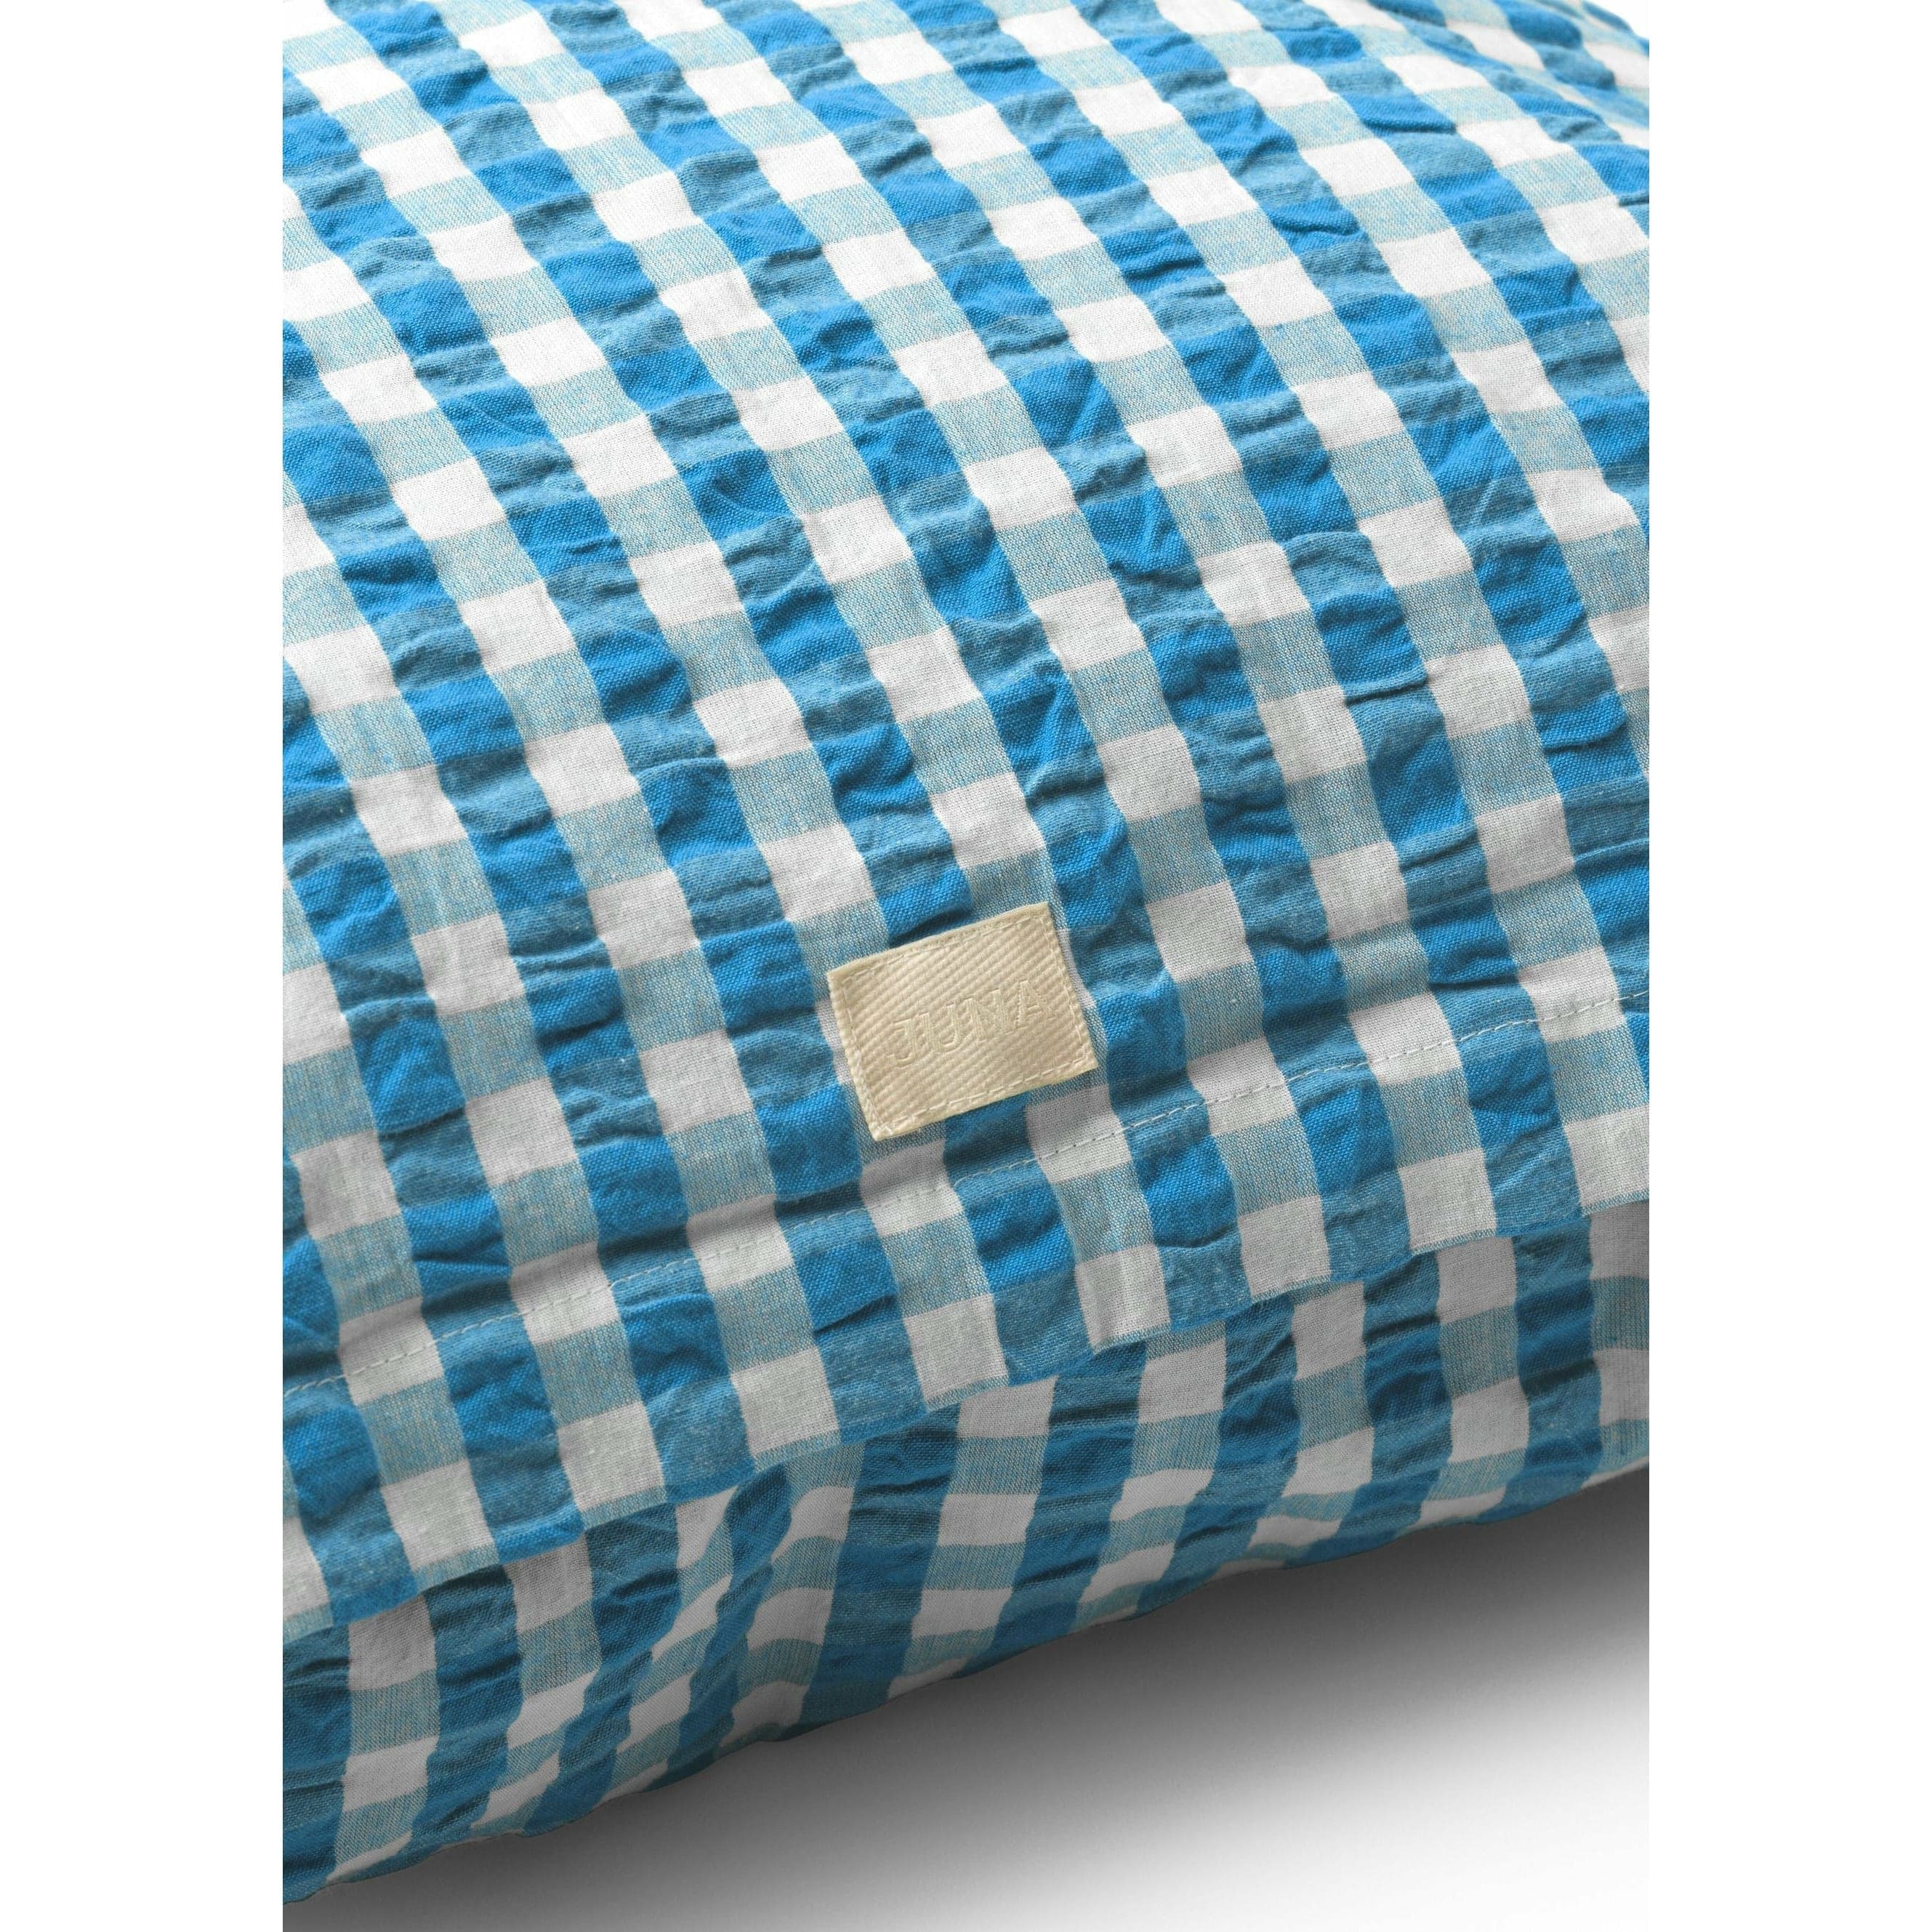 Juna Bæk & Bølge Pillowcase 63x60 cm, blauw/berken